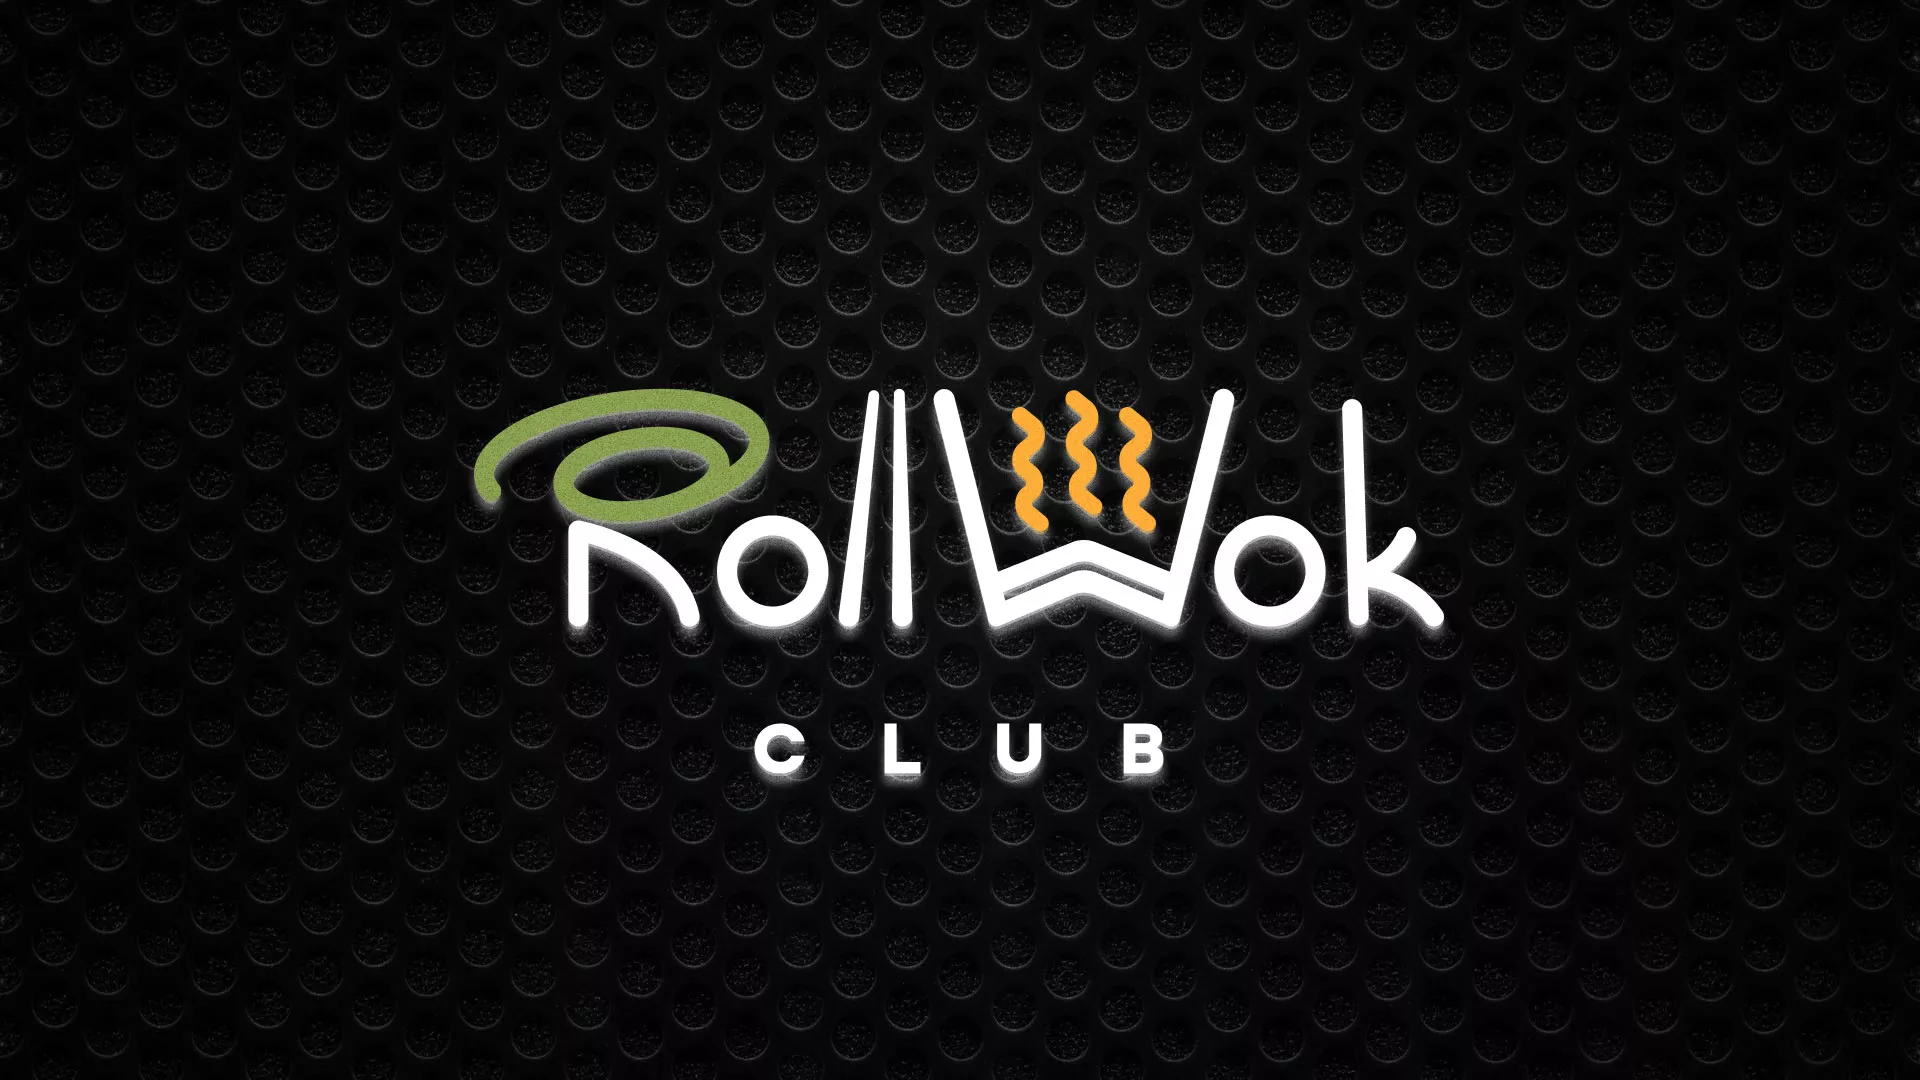 Брендирование торговых точек суши-бара «Roll Wok Club» в Боровске